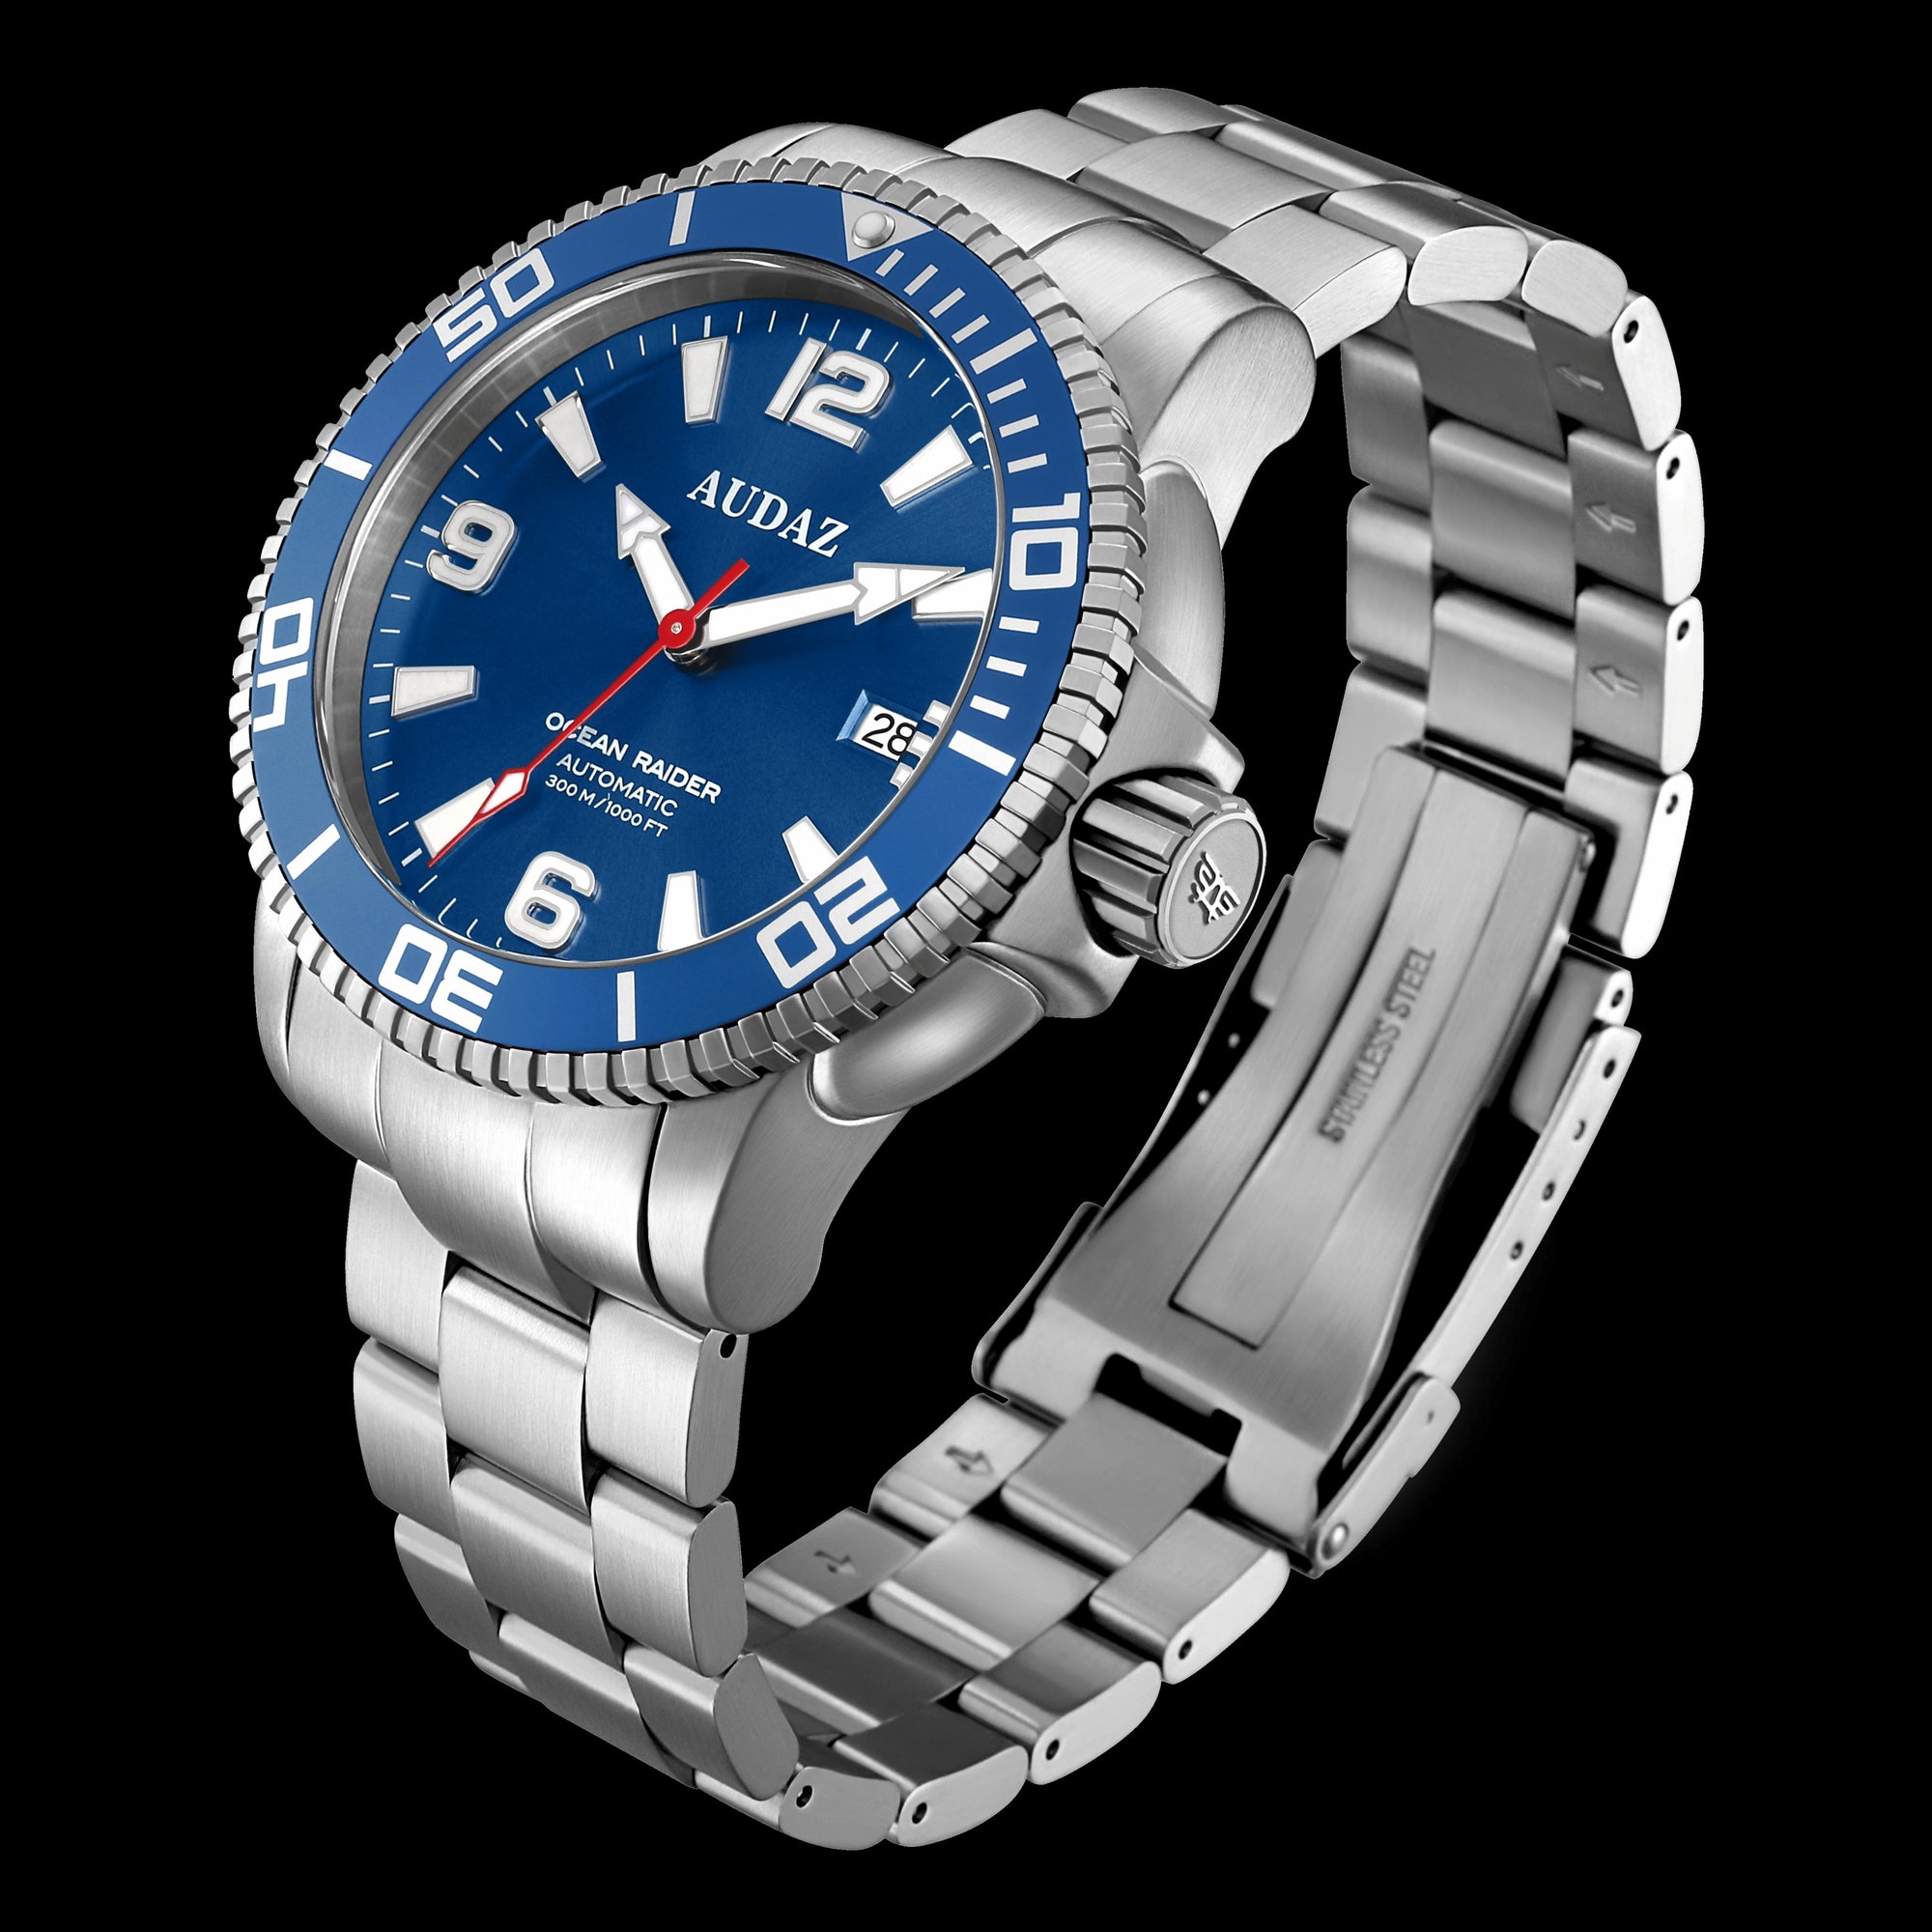 OCEAN RAIDER Watches ADZ-2060-02